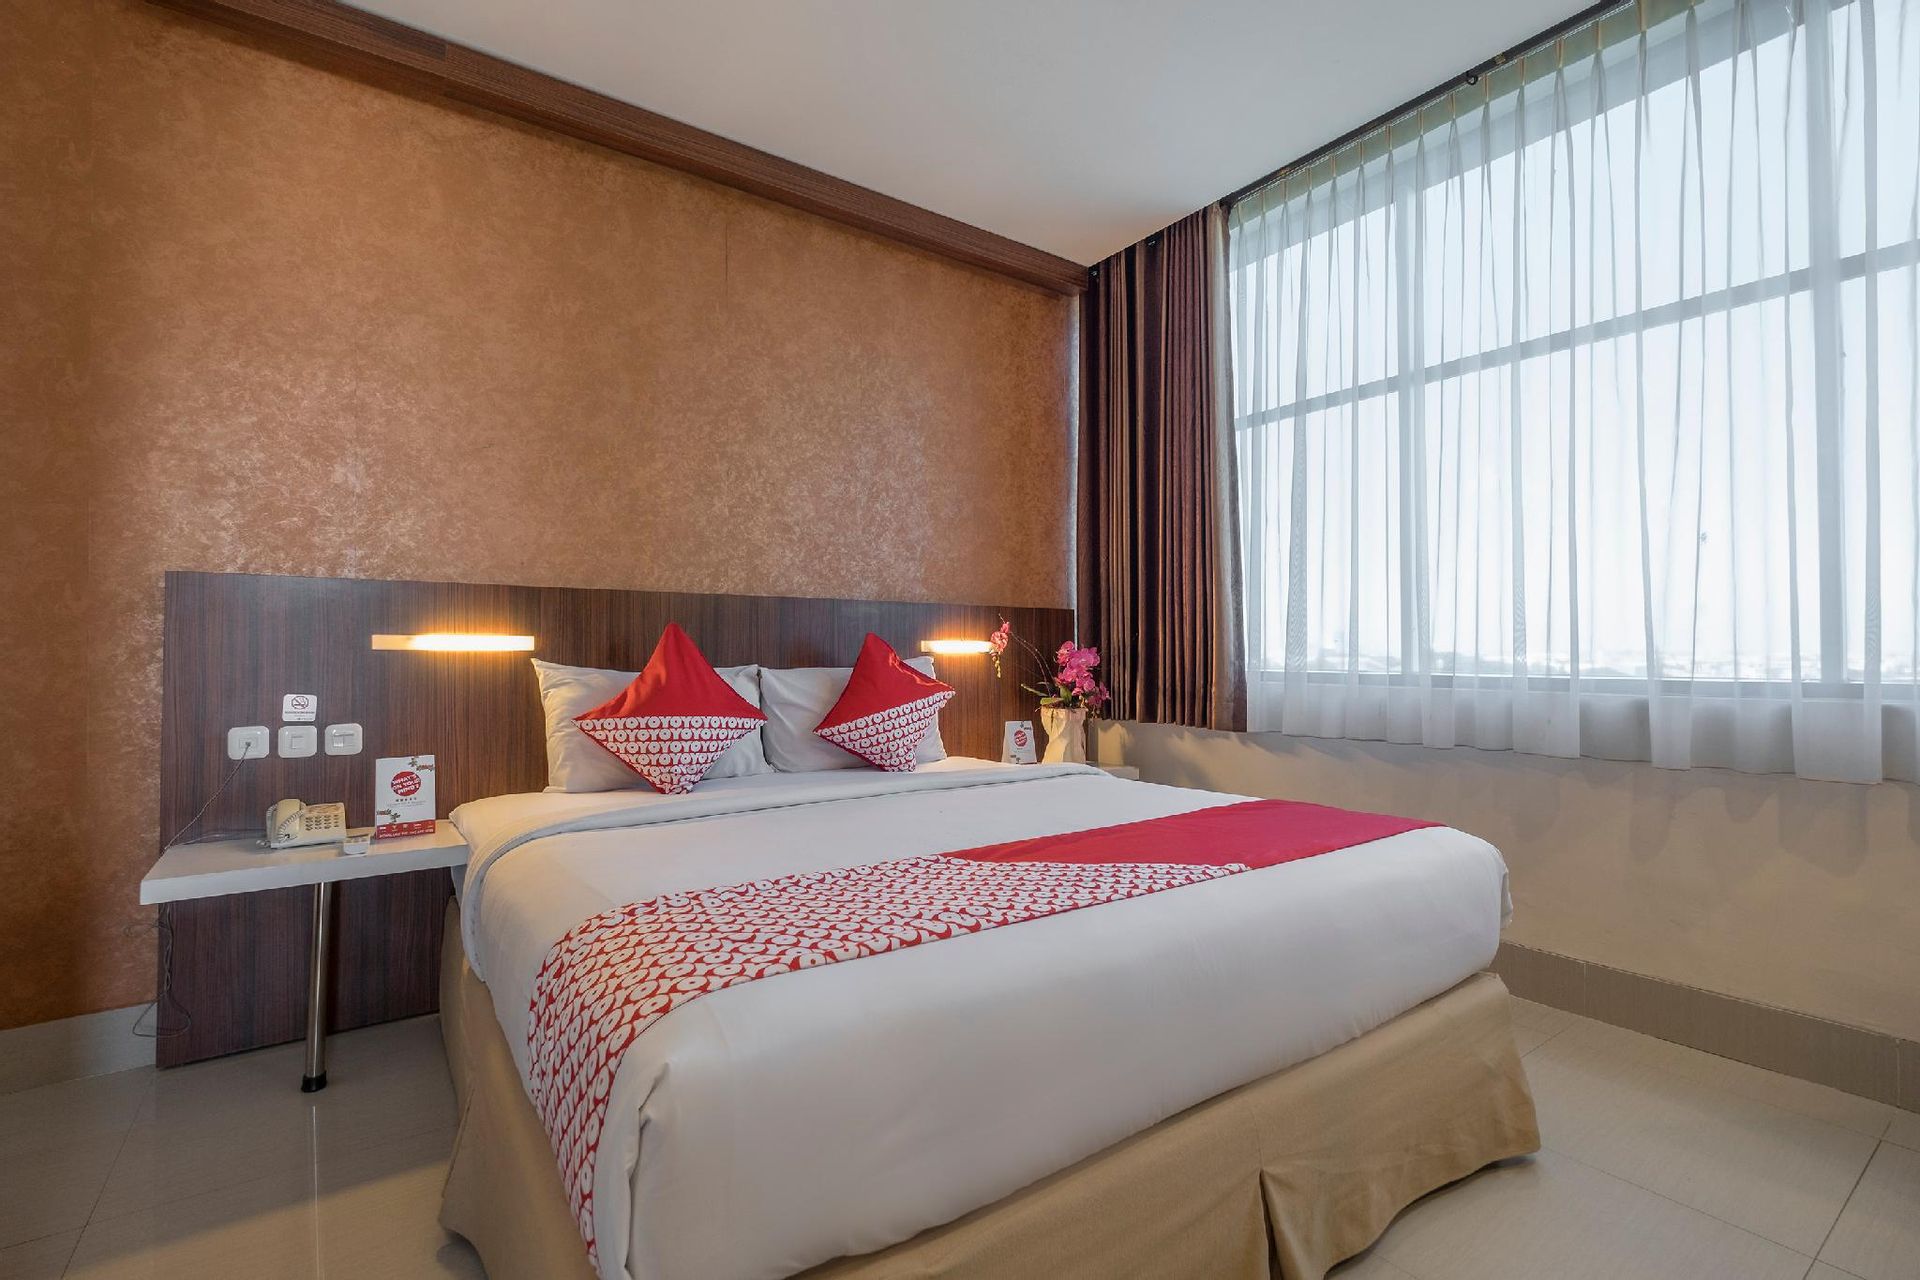 Bedroom 5, OYO 2264 Hotel Penginapan Citra, Bukittinggi